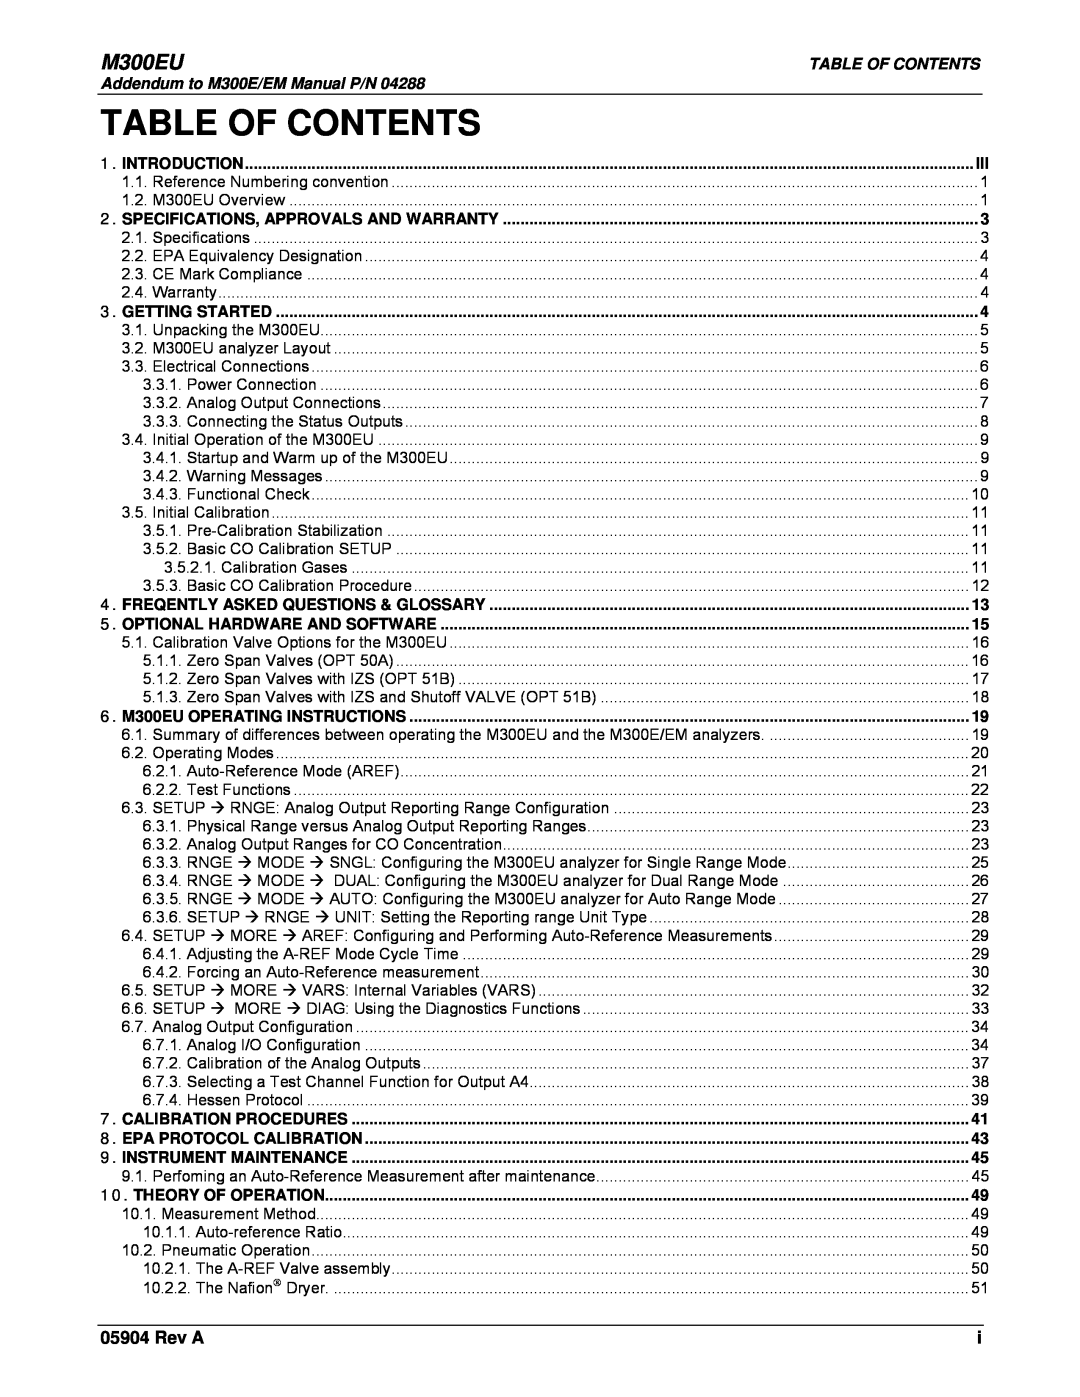 Teledyne Model 300EU manual Table Of Contents, M300EU, Rev A 